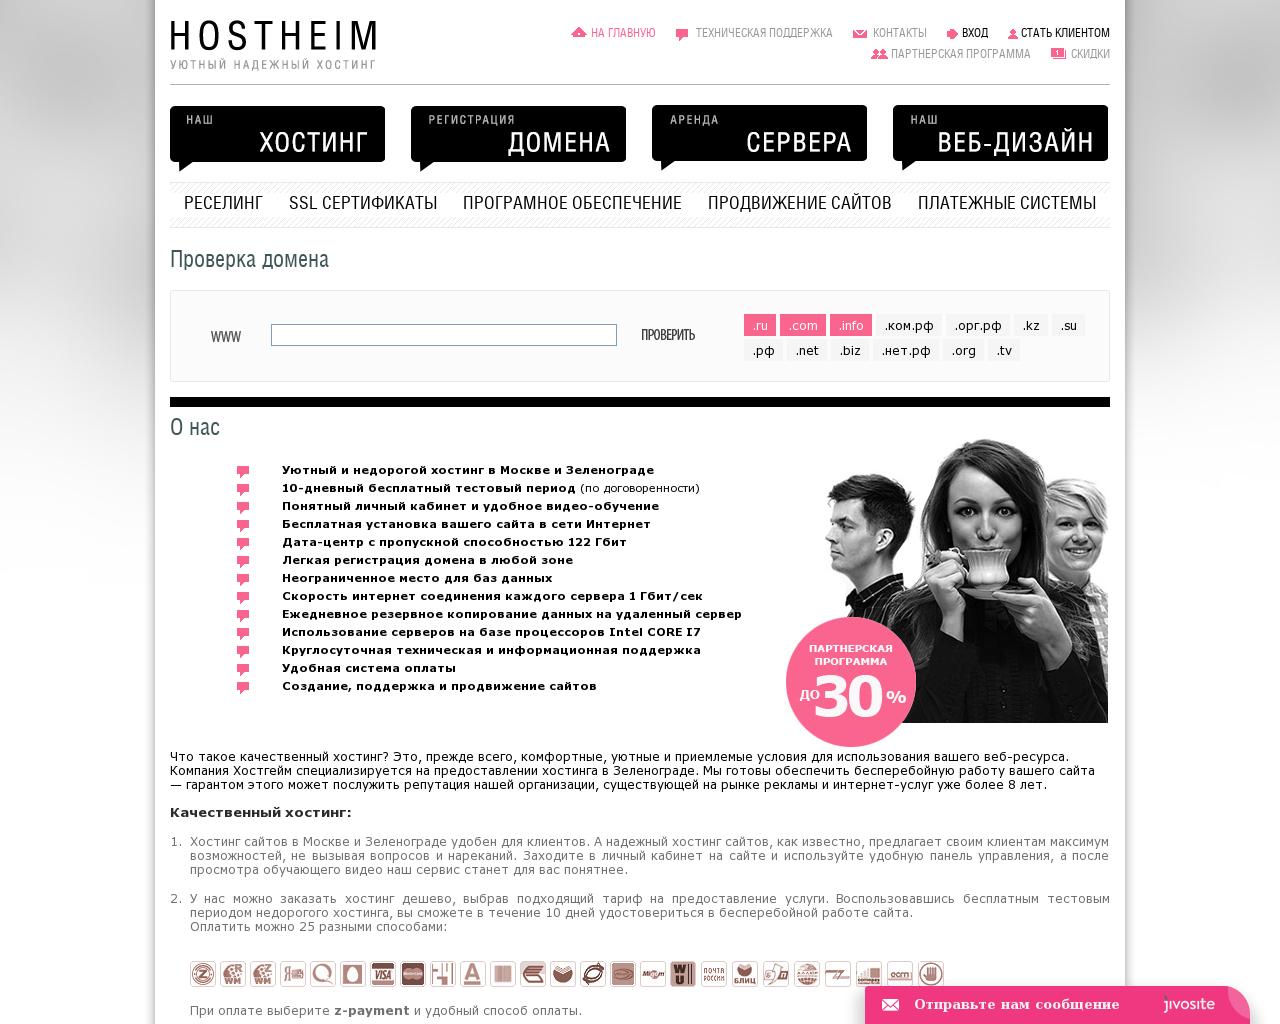 Изображение сайта hostheim.ru в разрешении 1280x1024